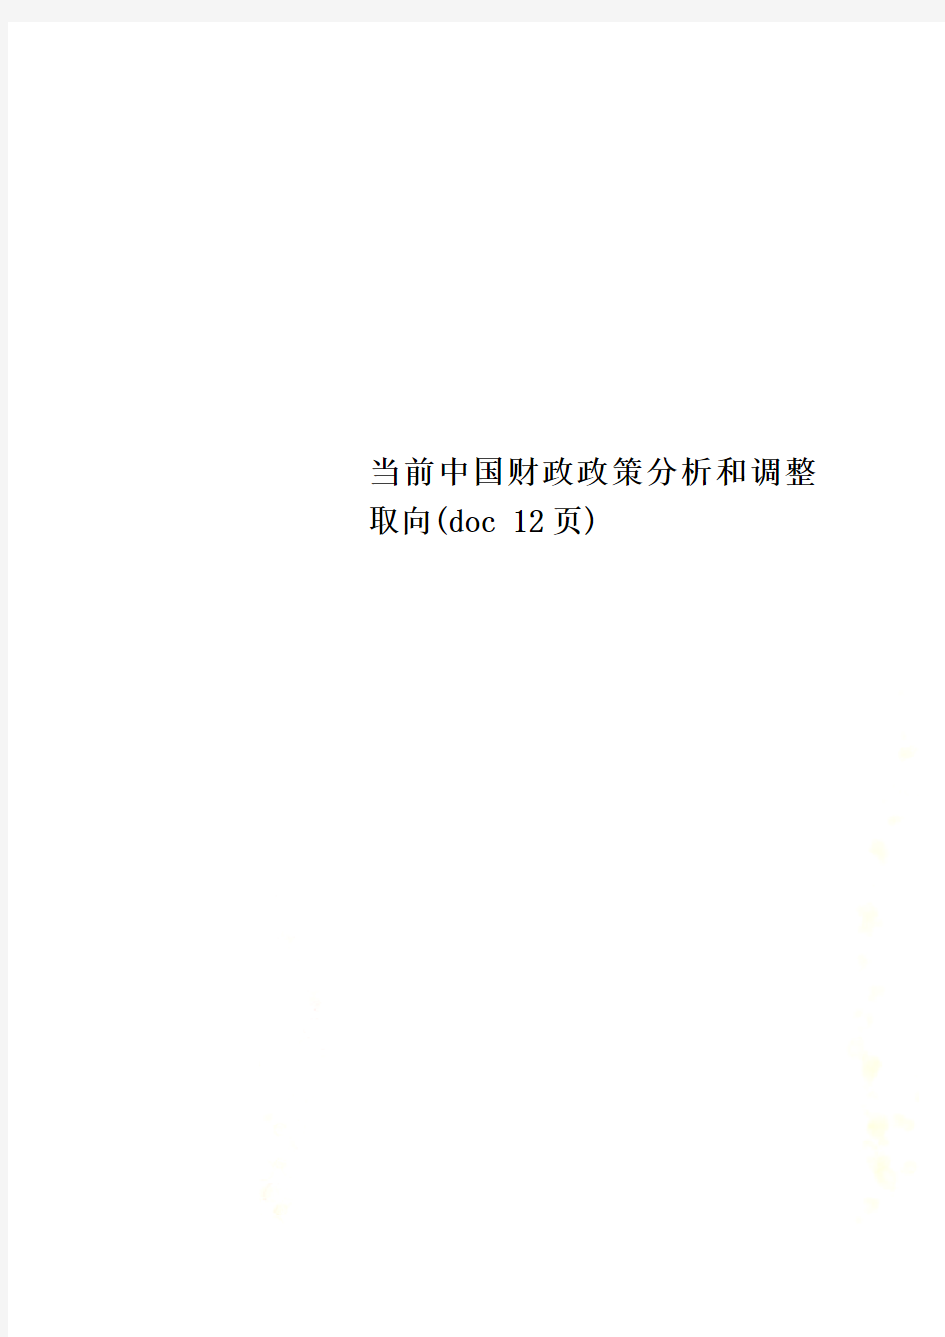 当前中国财政政策分析和调整取向(doc 12页